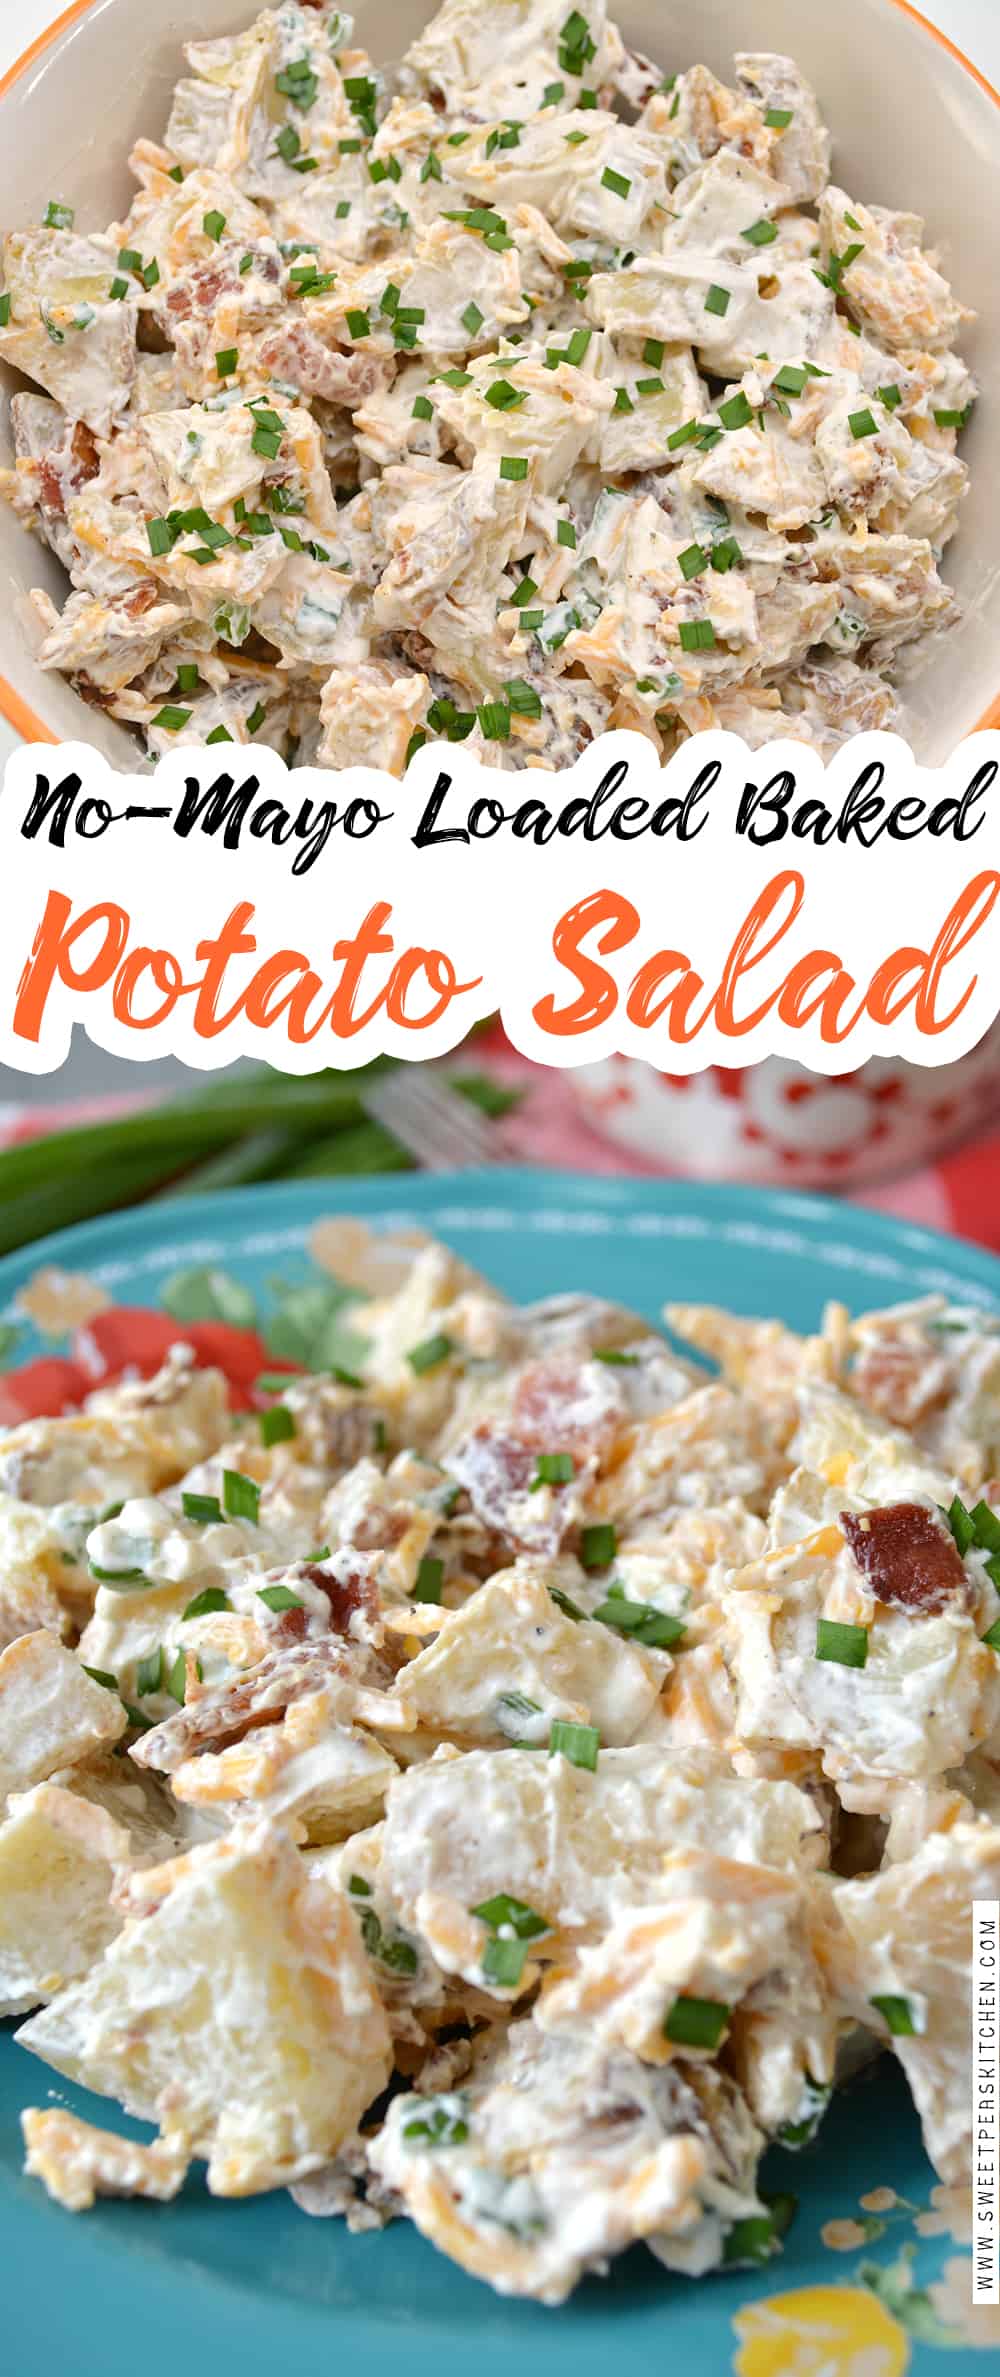 No-Mayo Loaded Baked Potato Salad